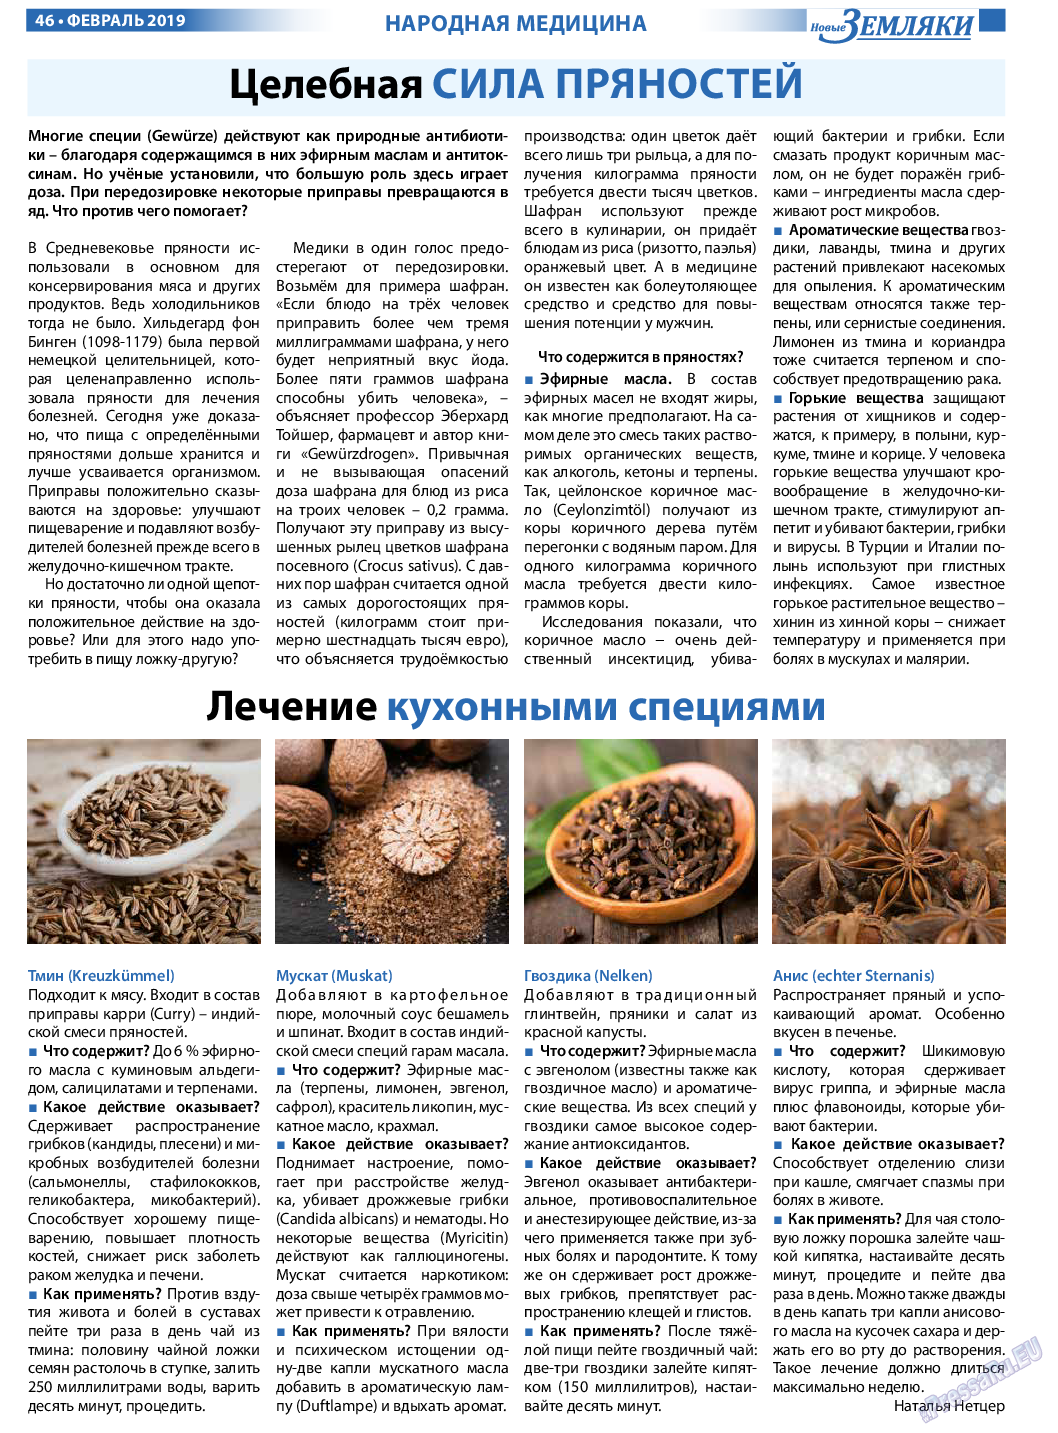 Новые Земляки, газета. 2019 №2 стр.46